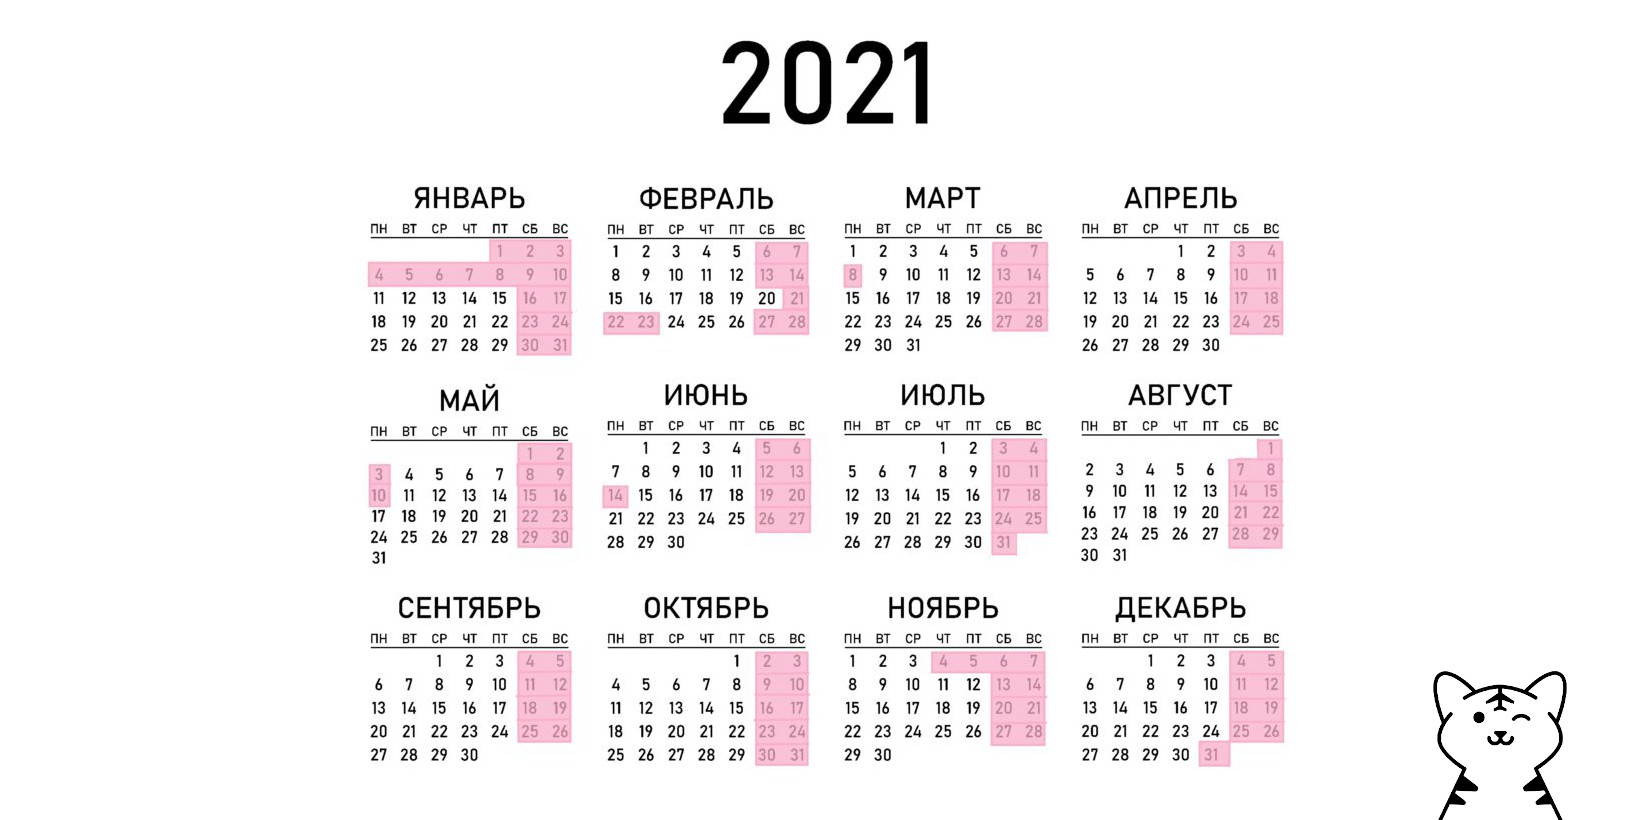 Календарь 21 22. Календарь выходных и праздничных дней на 2021. Производственный календарь на 2021 год с праздниками и выходными. Выходные и праздничные дни в 2021 году. Календарь 2021 года с праздничными днями и выходными днями.